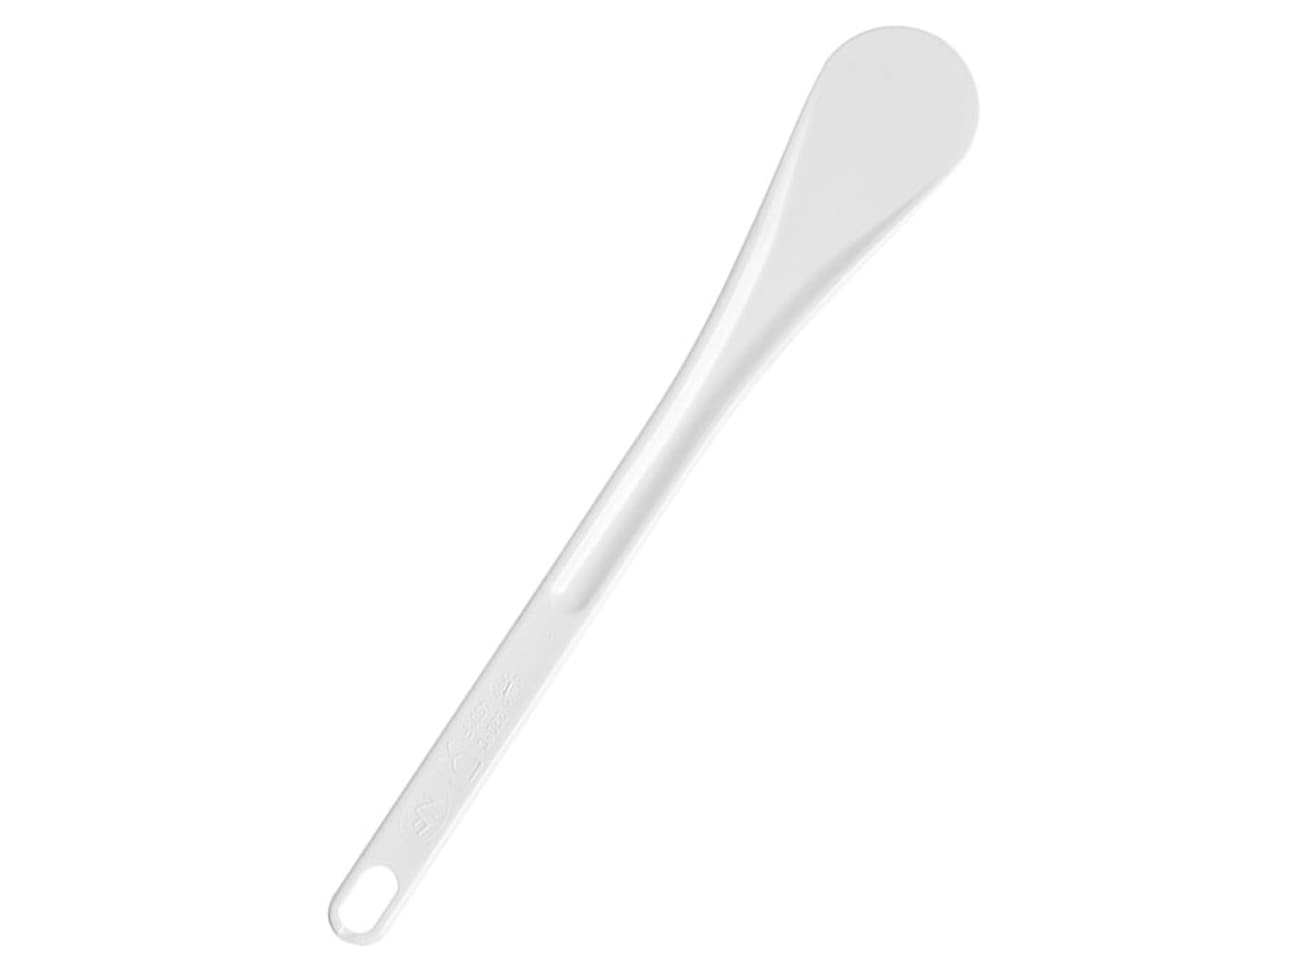 https://files.meilleurduchef.com/mdc/photo/produit/mfr/spatule-exoglass/spatule-exoglass-1-main-1300.jpg